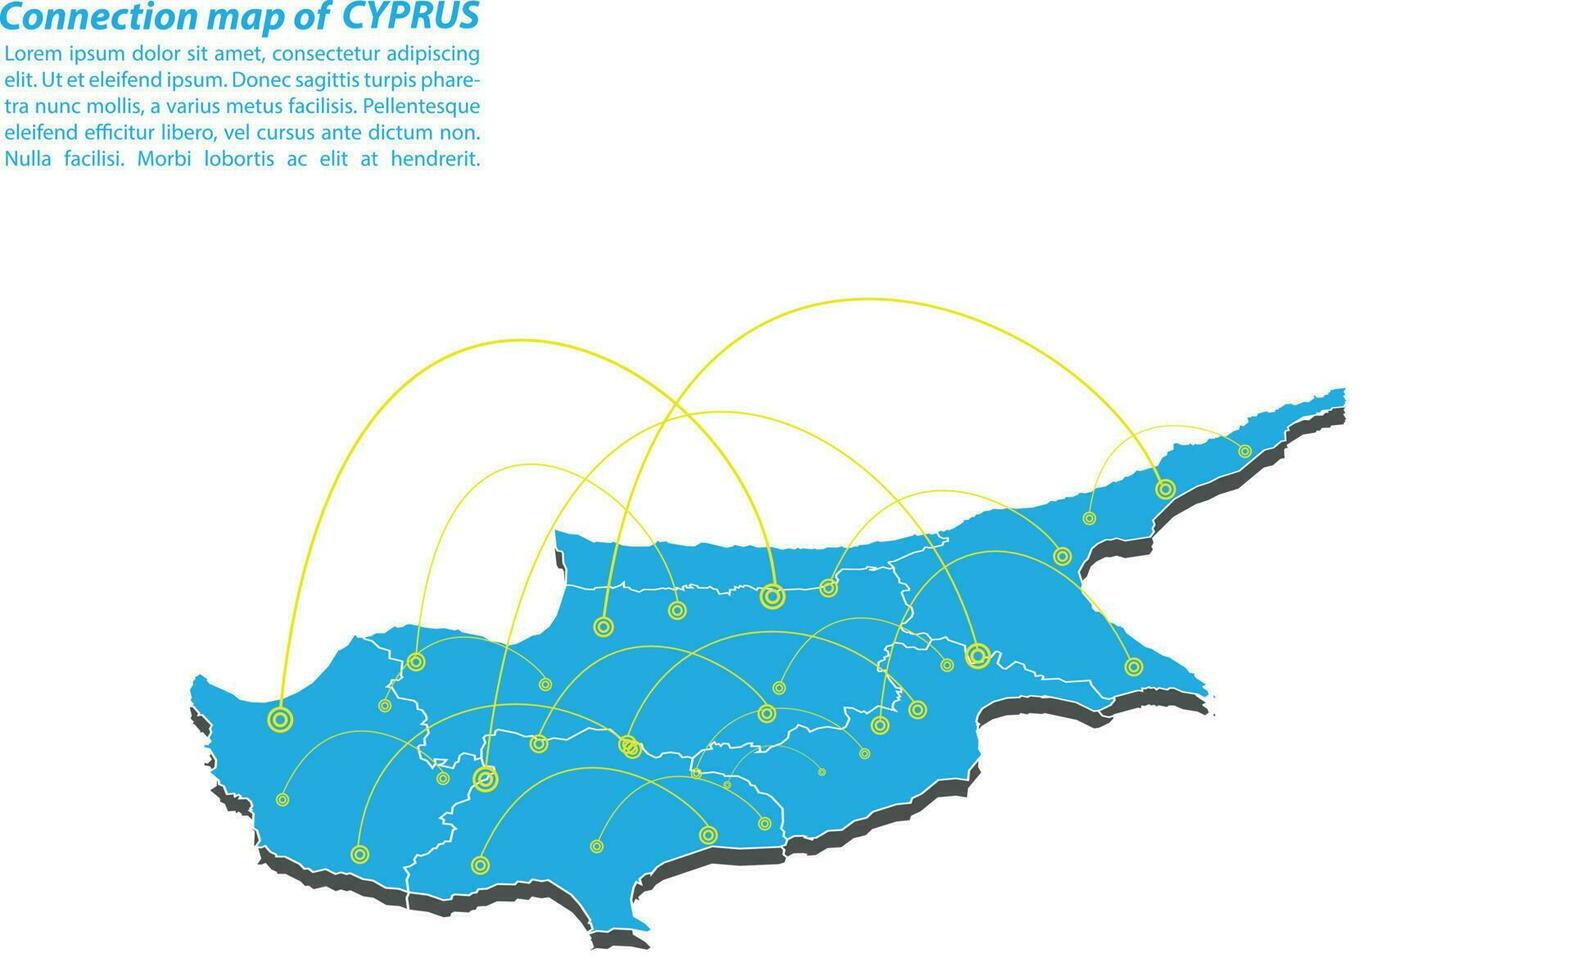 moderno do design de rede de conexões de mapa de Chipre, melhor conceito de internet do negócio de mapa de Chipre da série de conceitos, ponto de mapa e composição de linha. mapa infográfico. ilustração vetorial. vetor